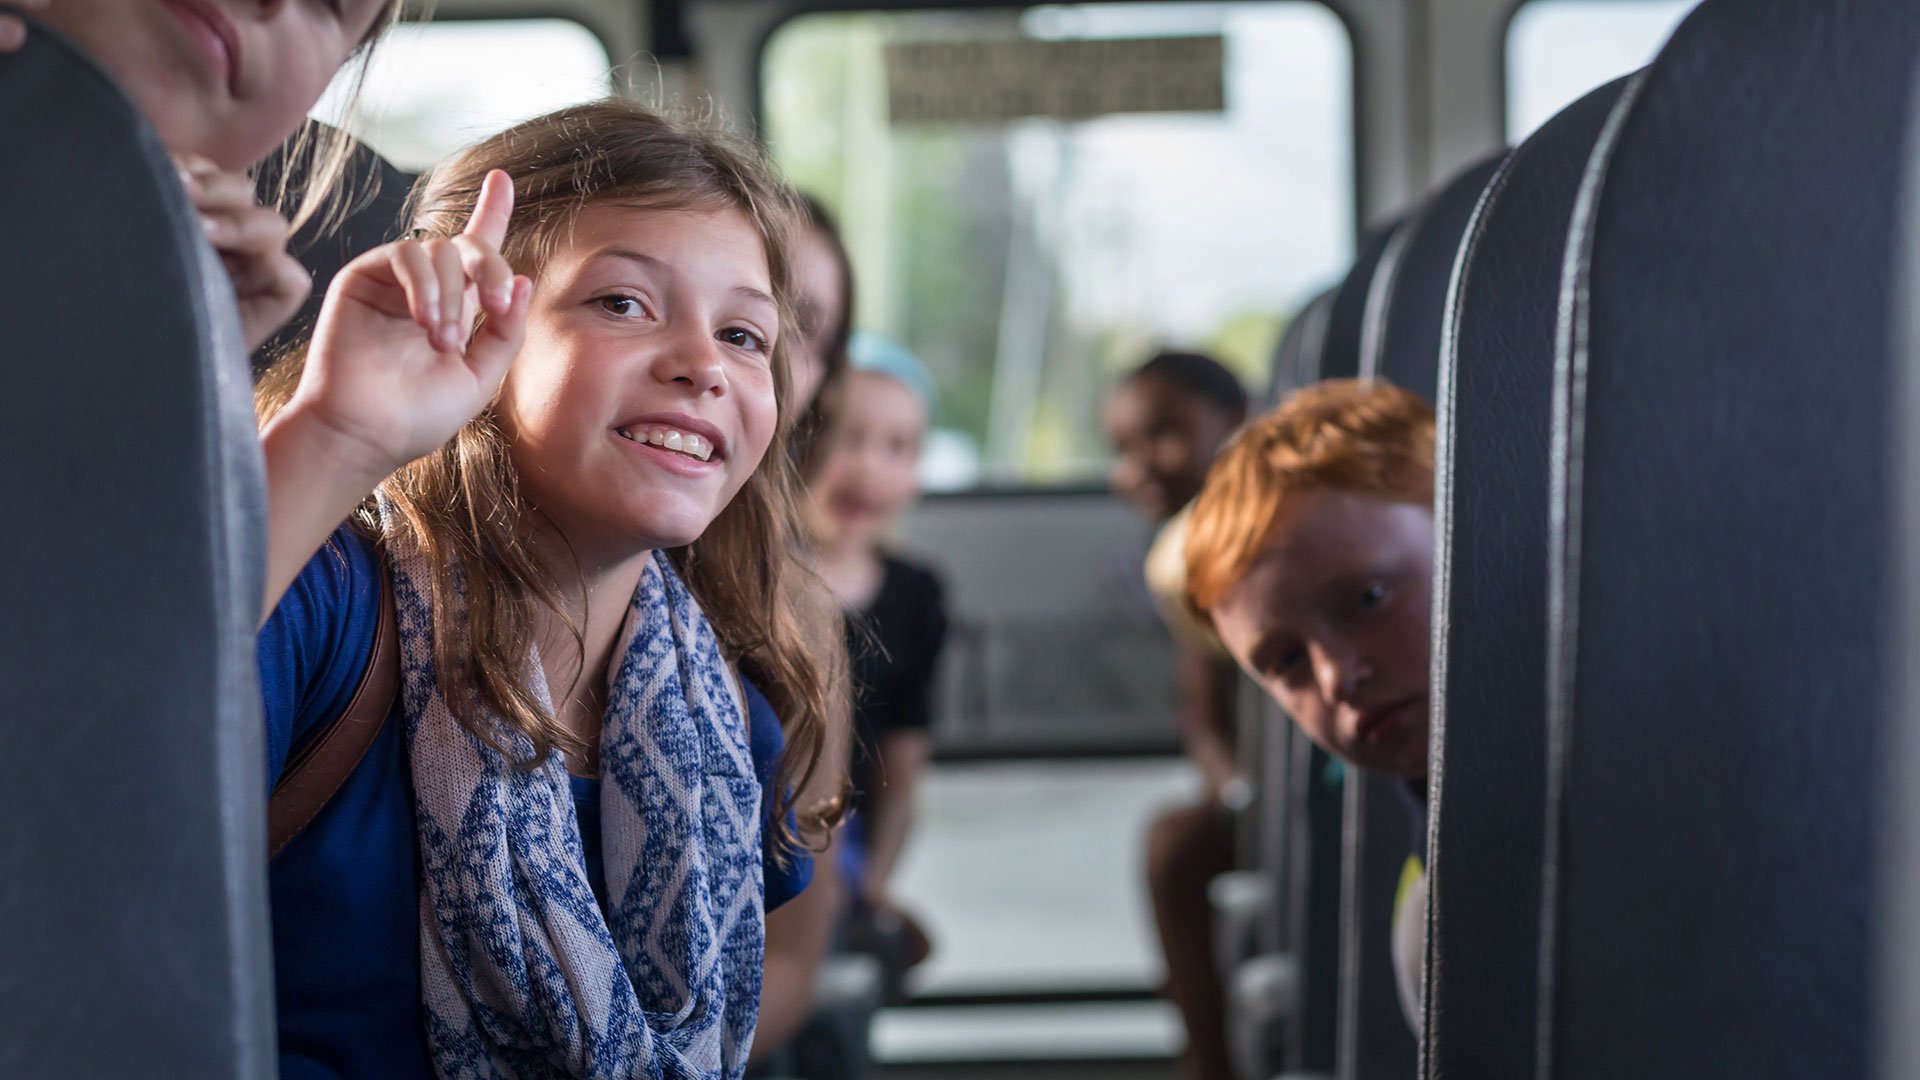 Бесплатный проезд в автобусе для детей. Автобус для детей. Общественный транспорт для детей. Подростки в автобусе. Подростки в общественном транспорте.